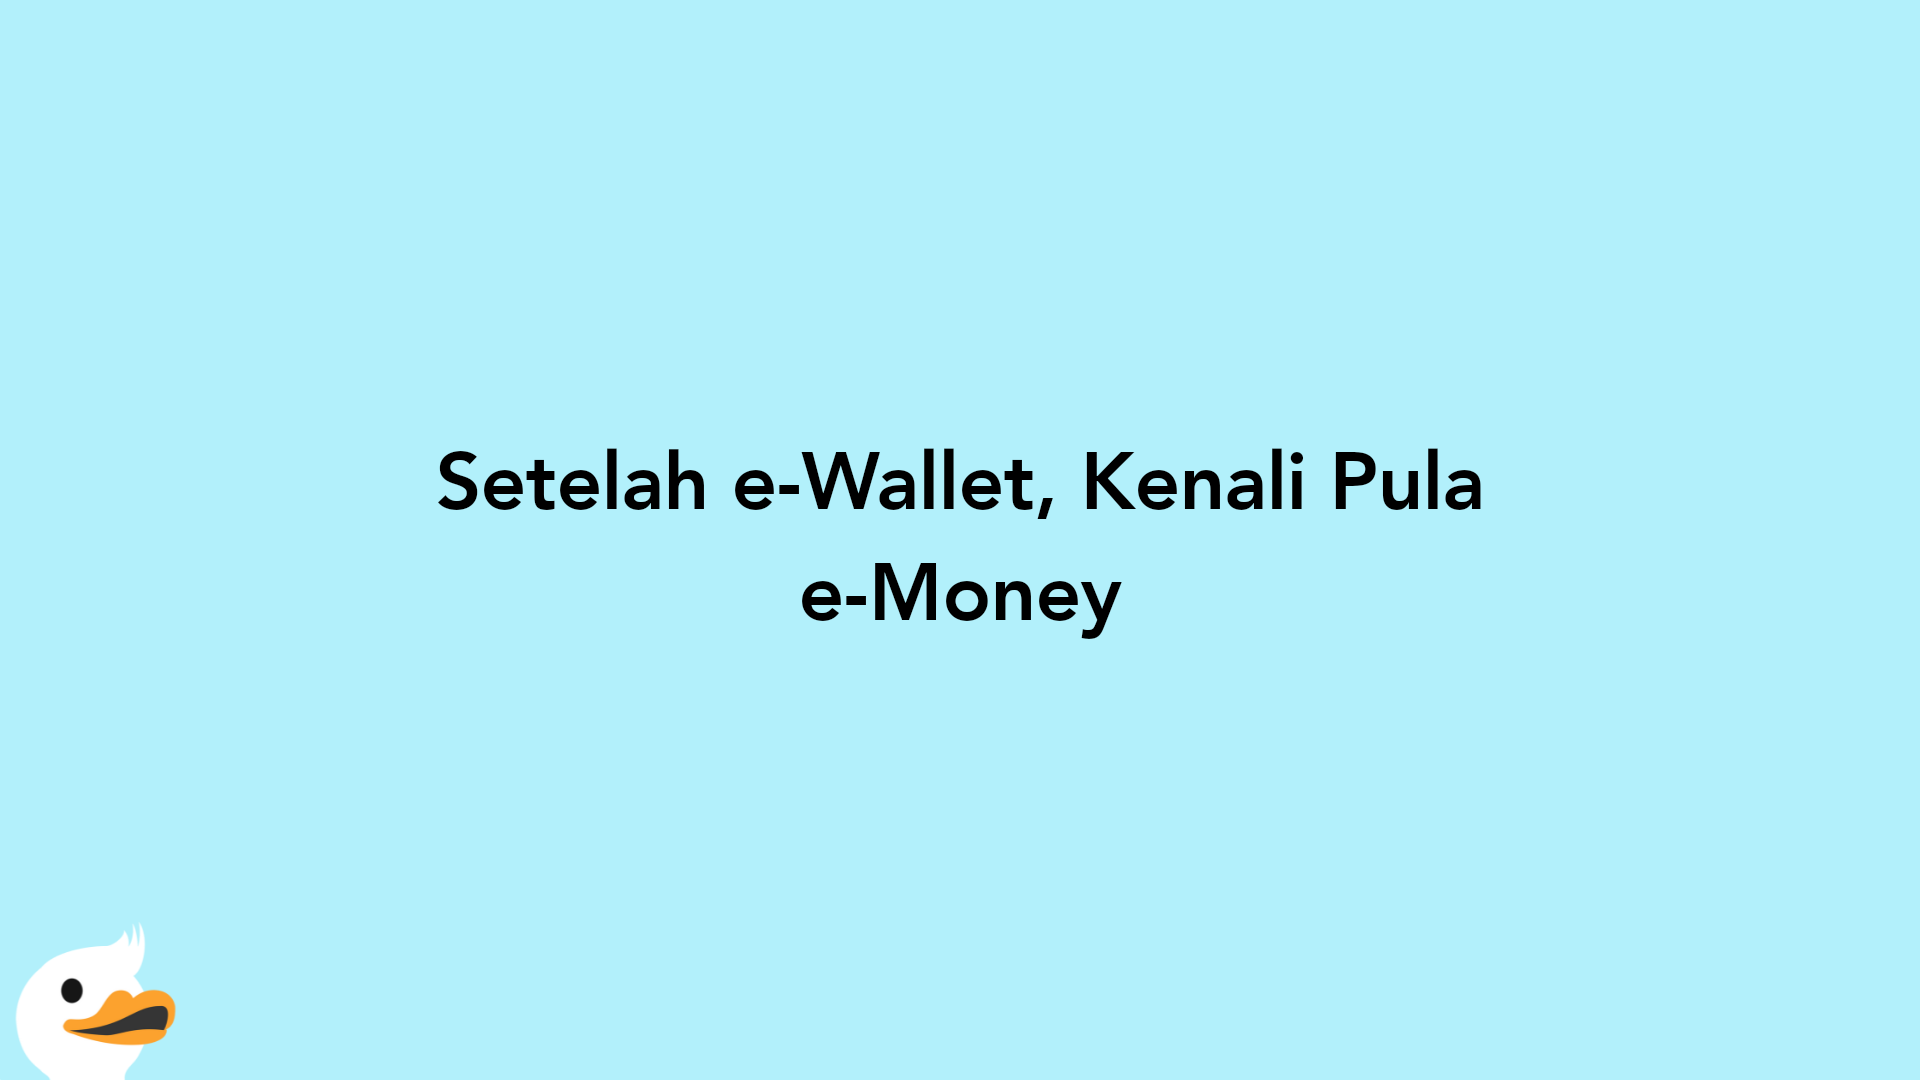 Setelah e-Wallet, Kenali Pula e-Money